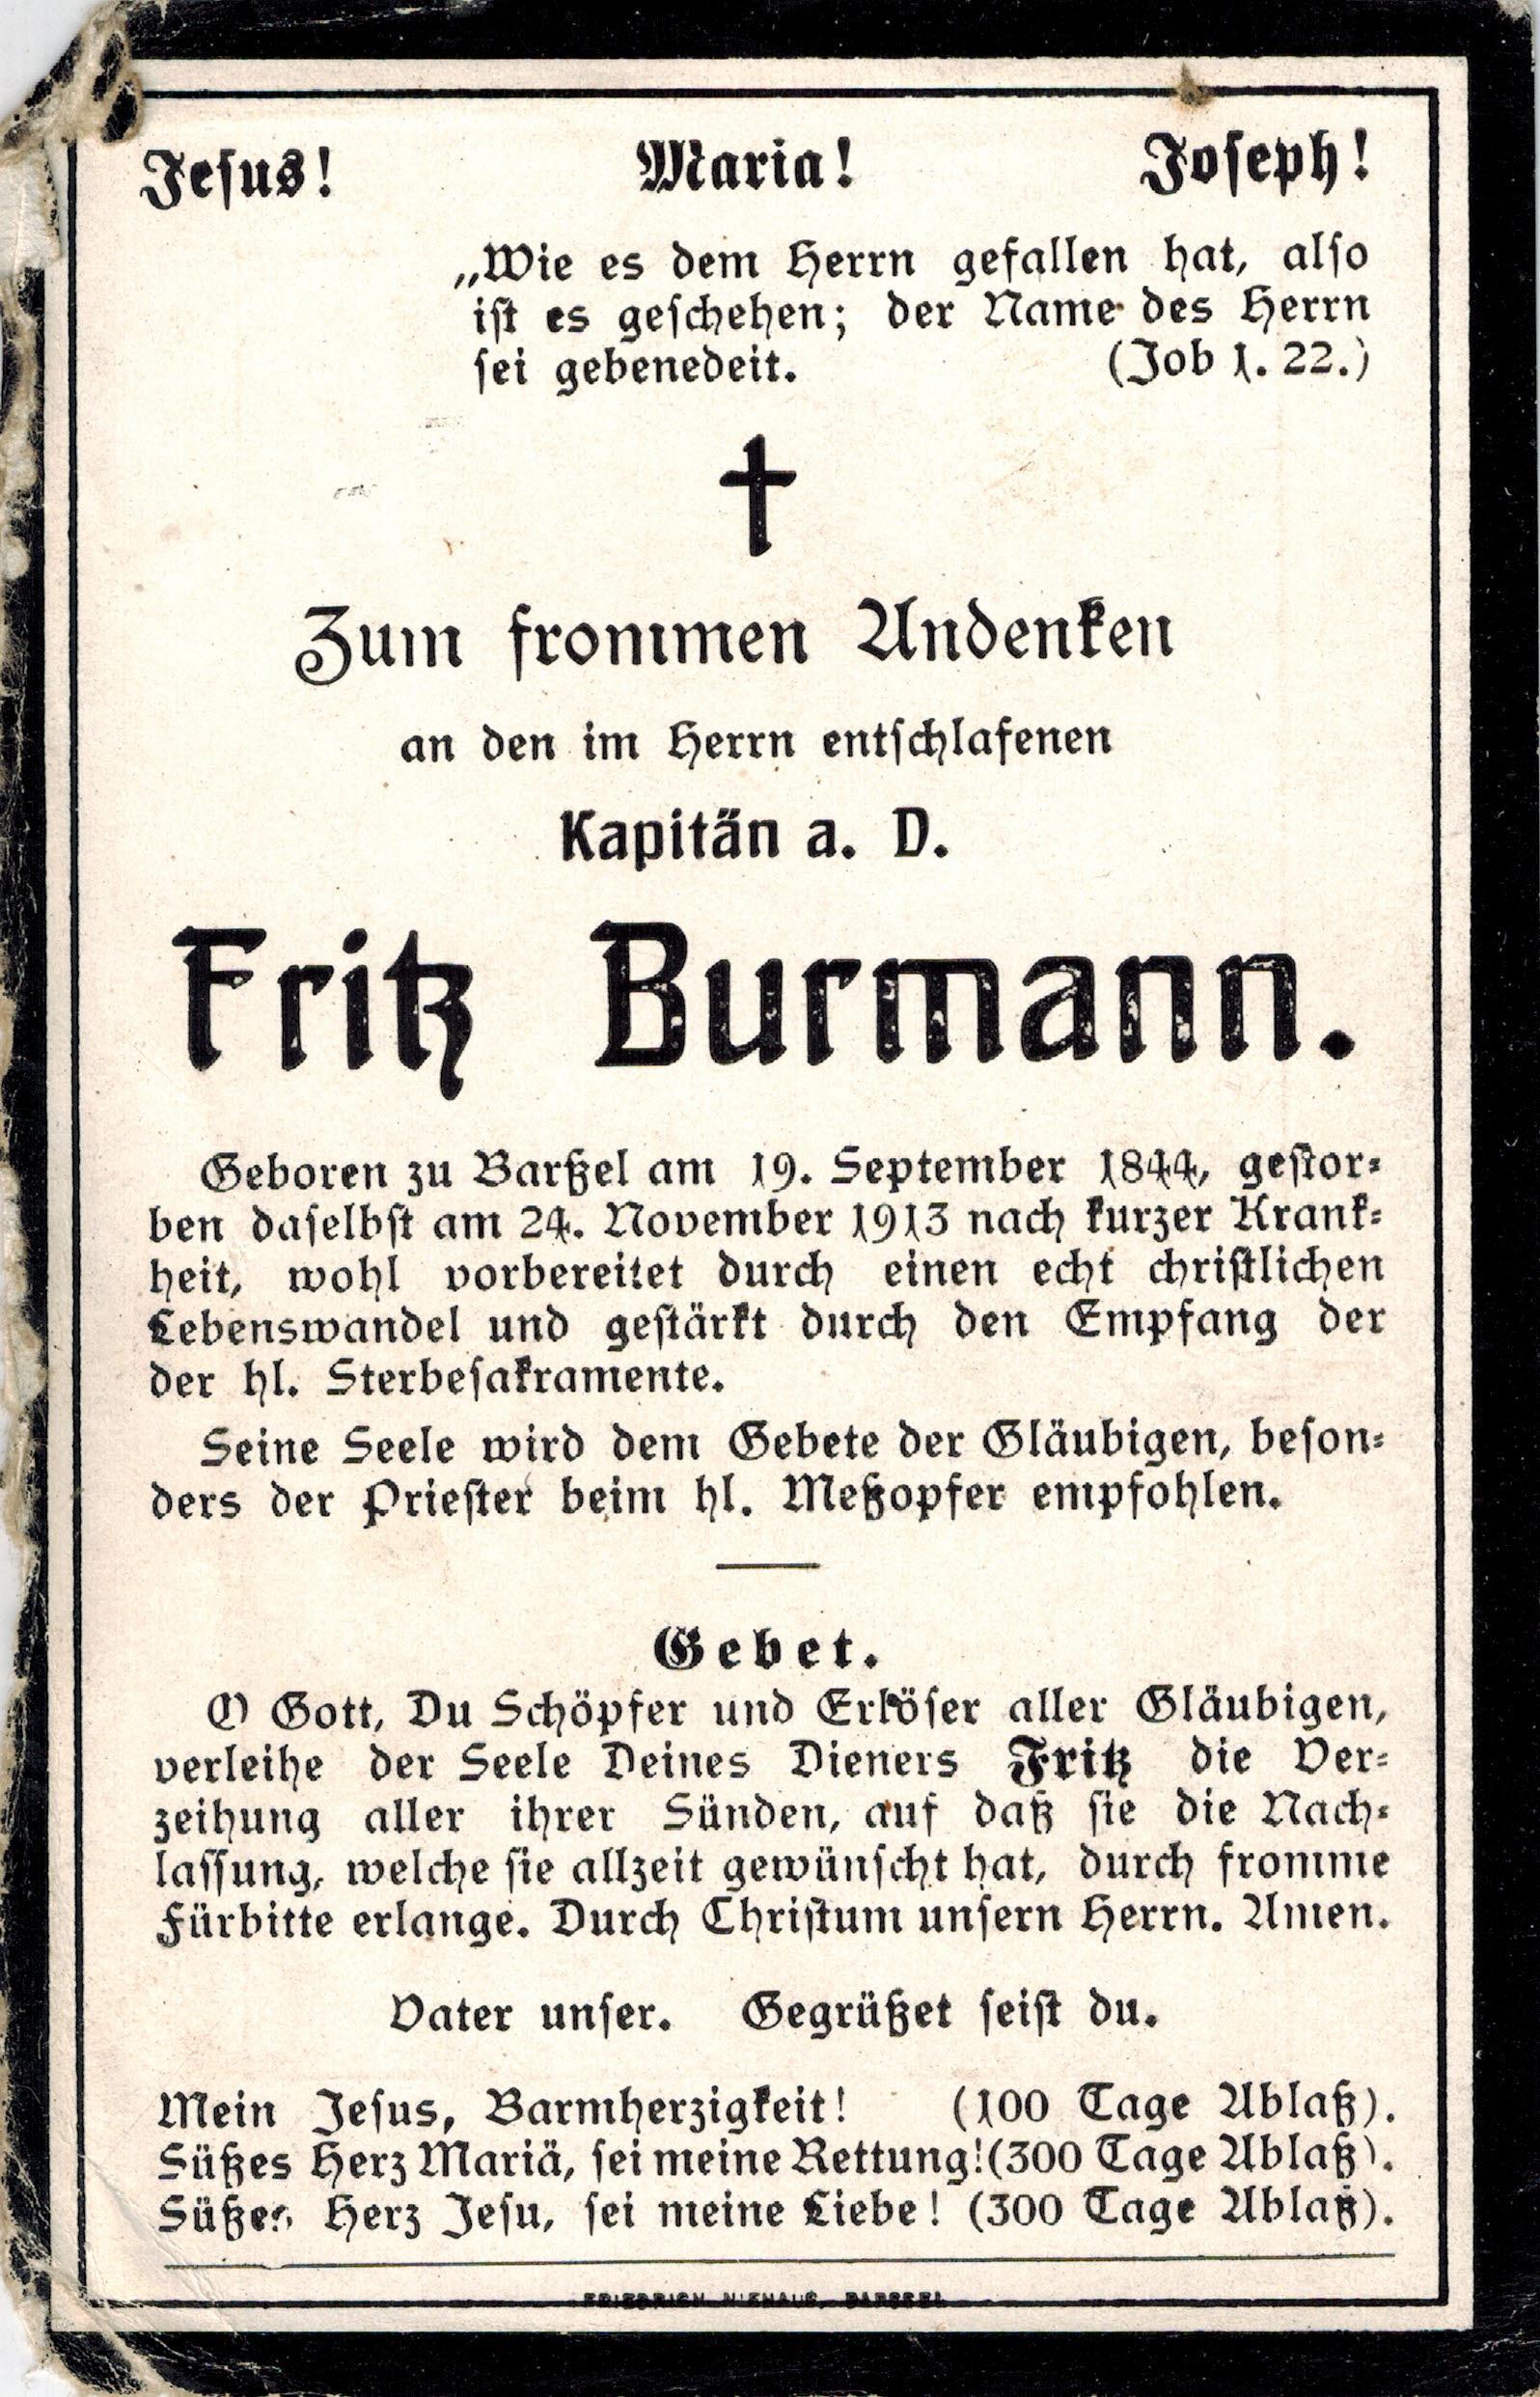 Verstorbener Fritz Burmann 24.11.1913